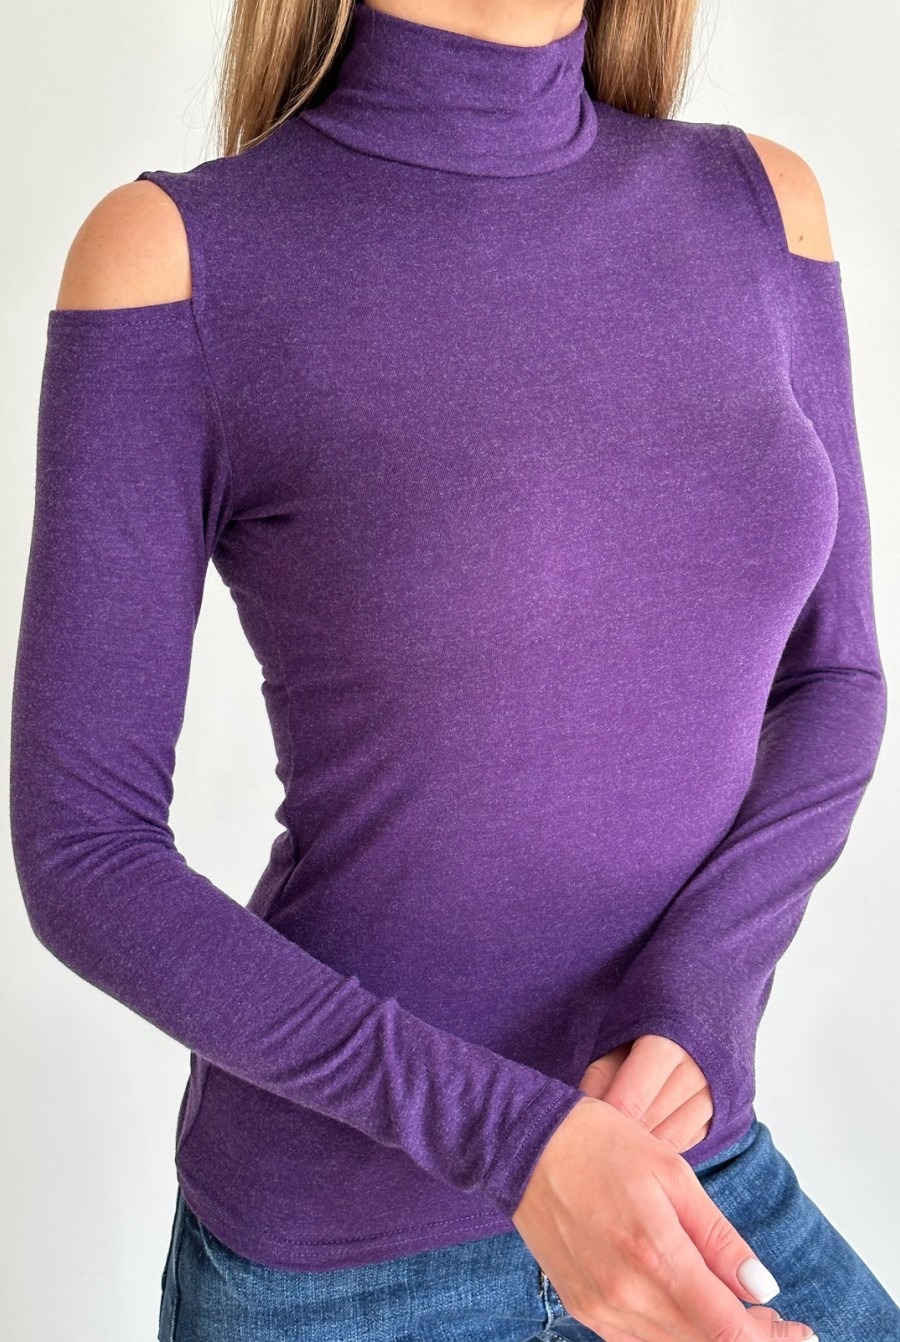 Фиолетовая трикотажная водолазка с вырезами на плечах - Фото 4